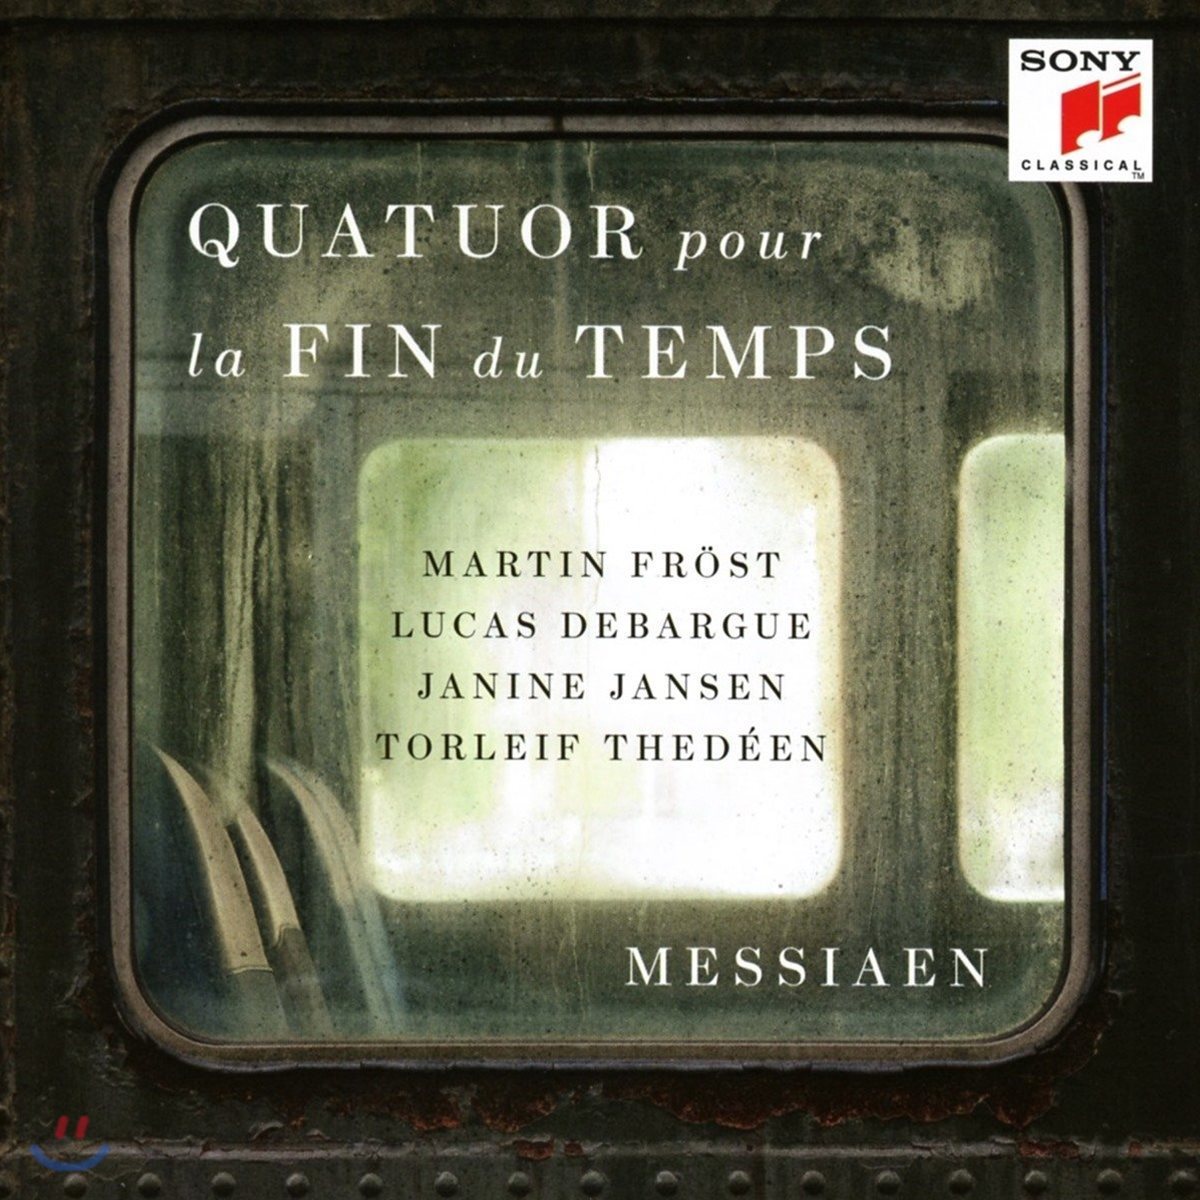 Martin Frost / Lucas Debargue 메시앙: 세상의 종말을 위한 사중주 (Messiaen: Quatuor pour la Fin du Temps)